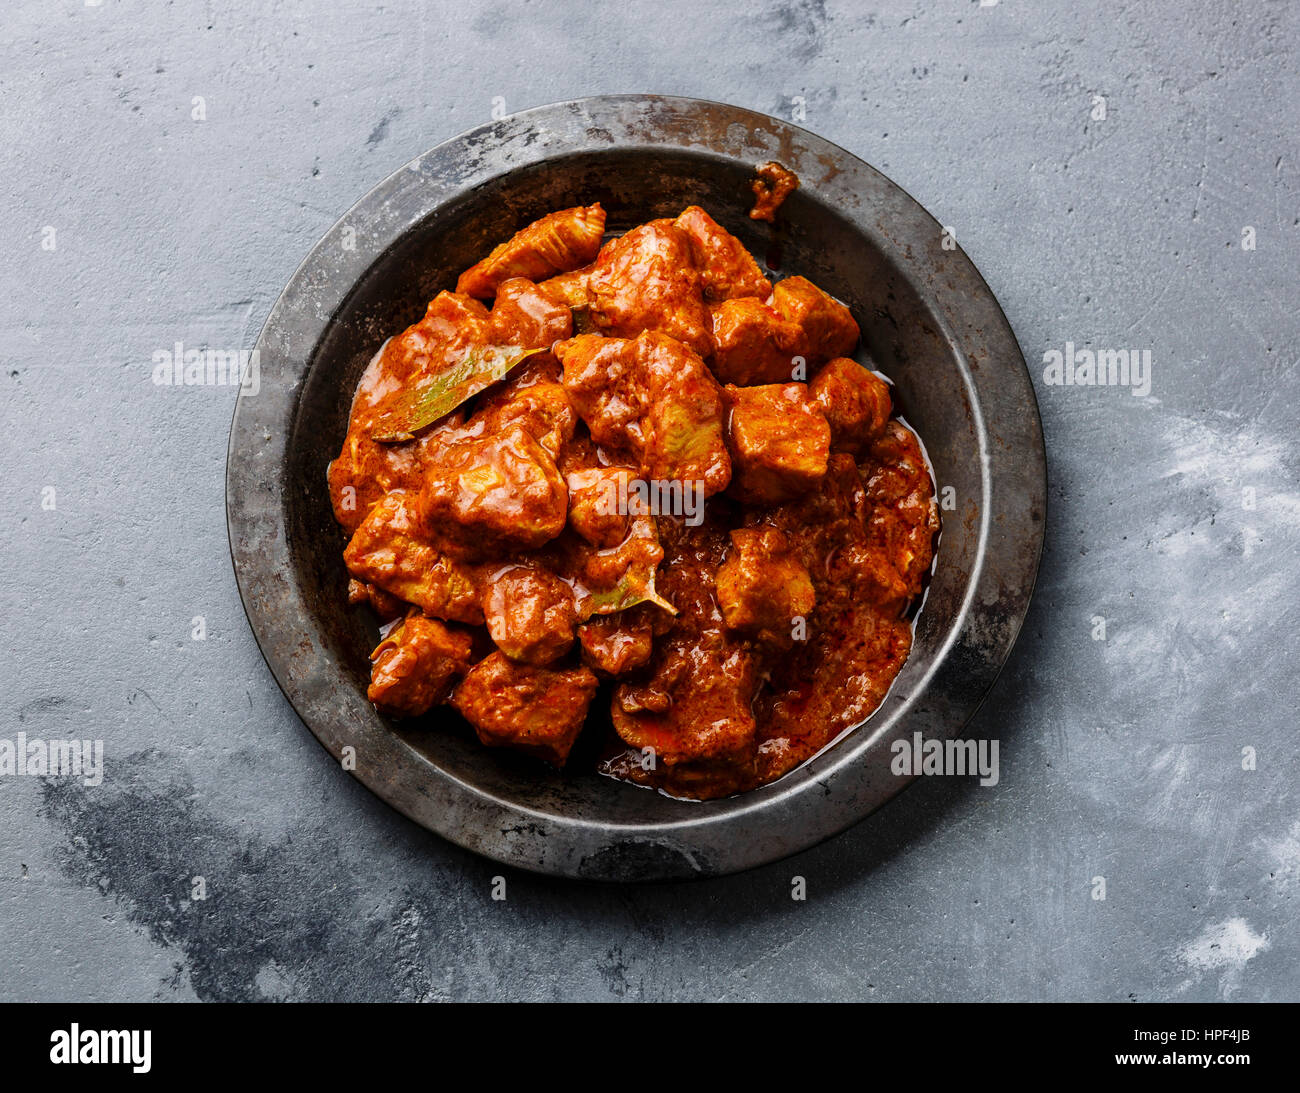 Poulet tikka masala curry épicé à la viande plaque métallique close-up Banque D'Images